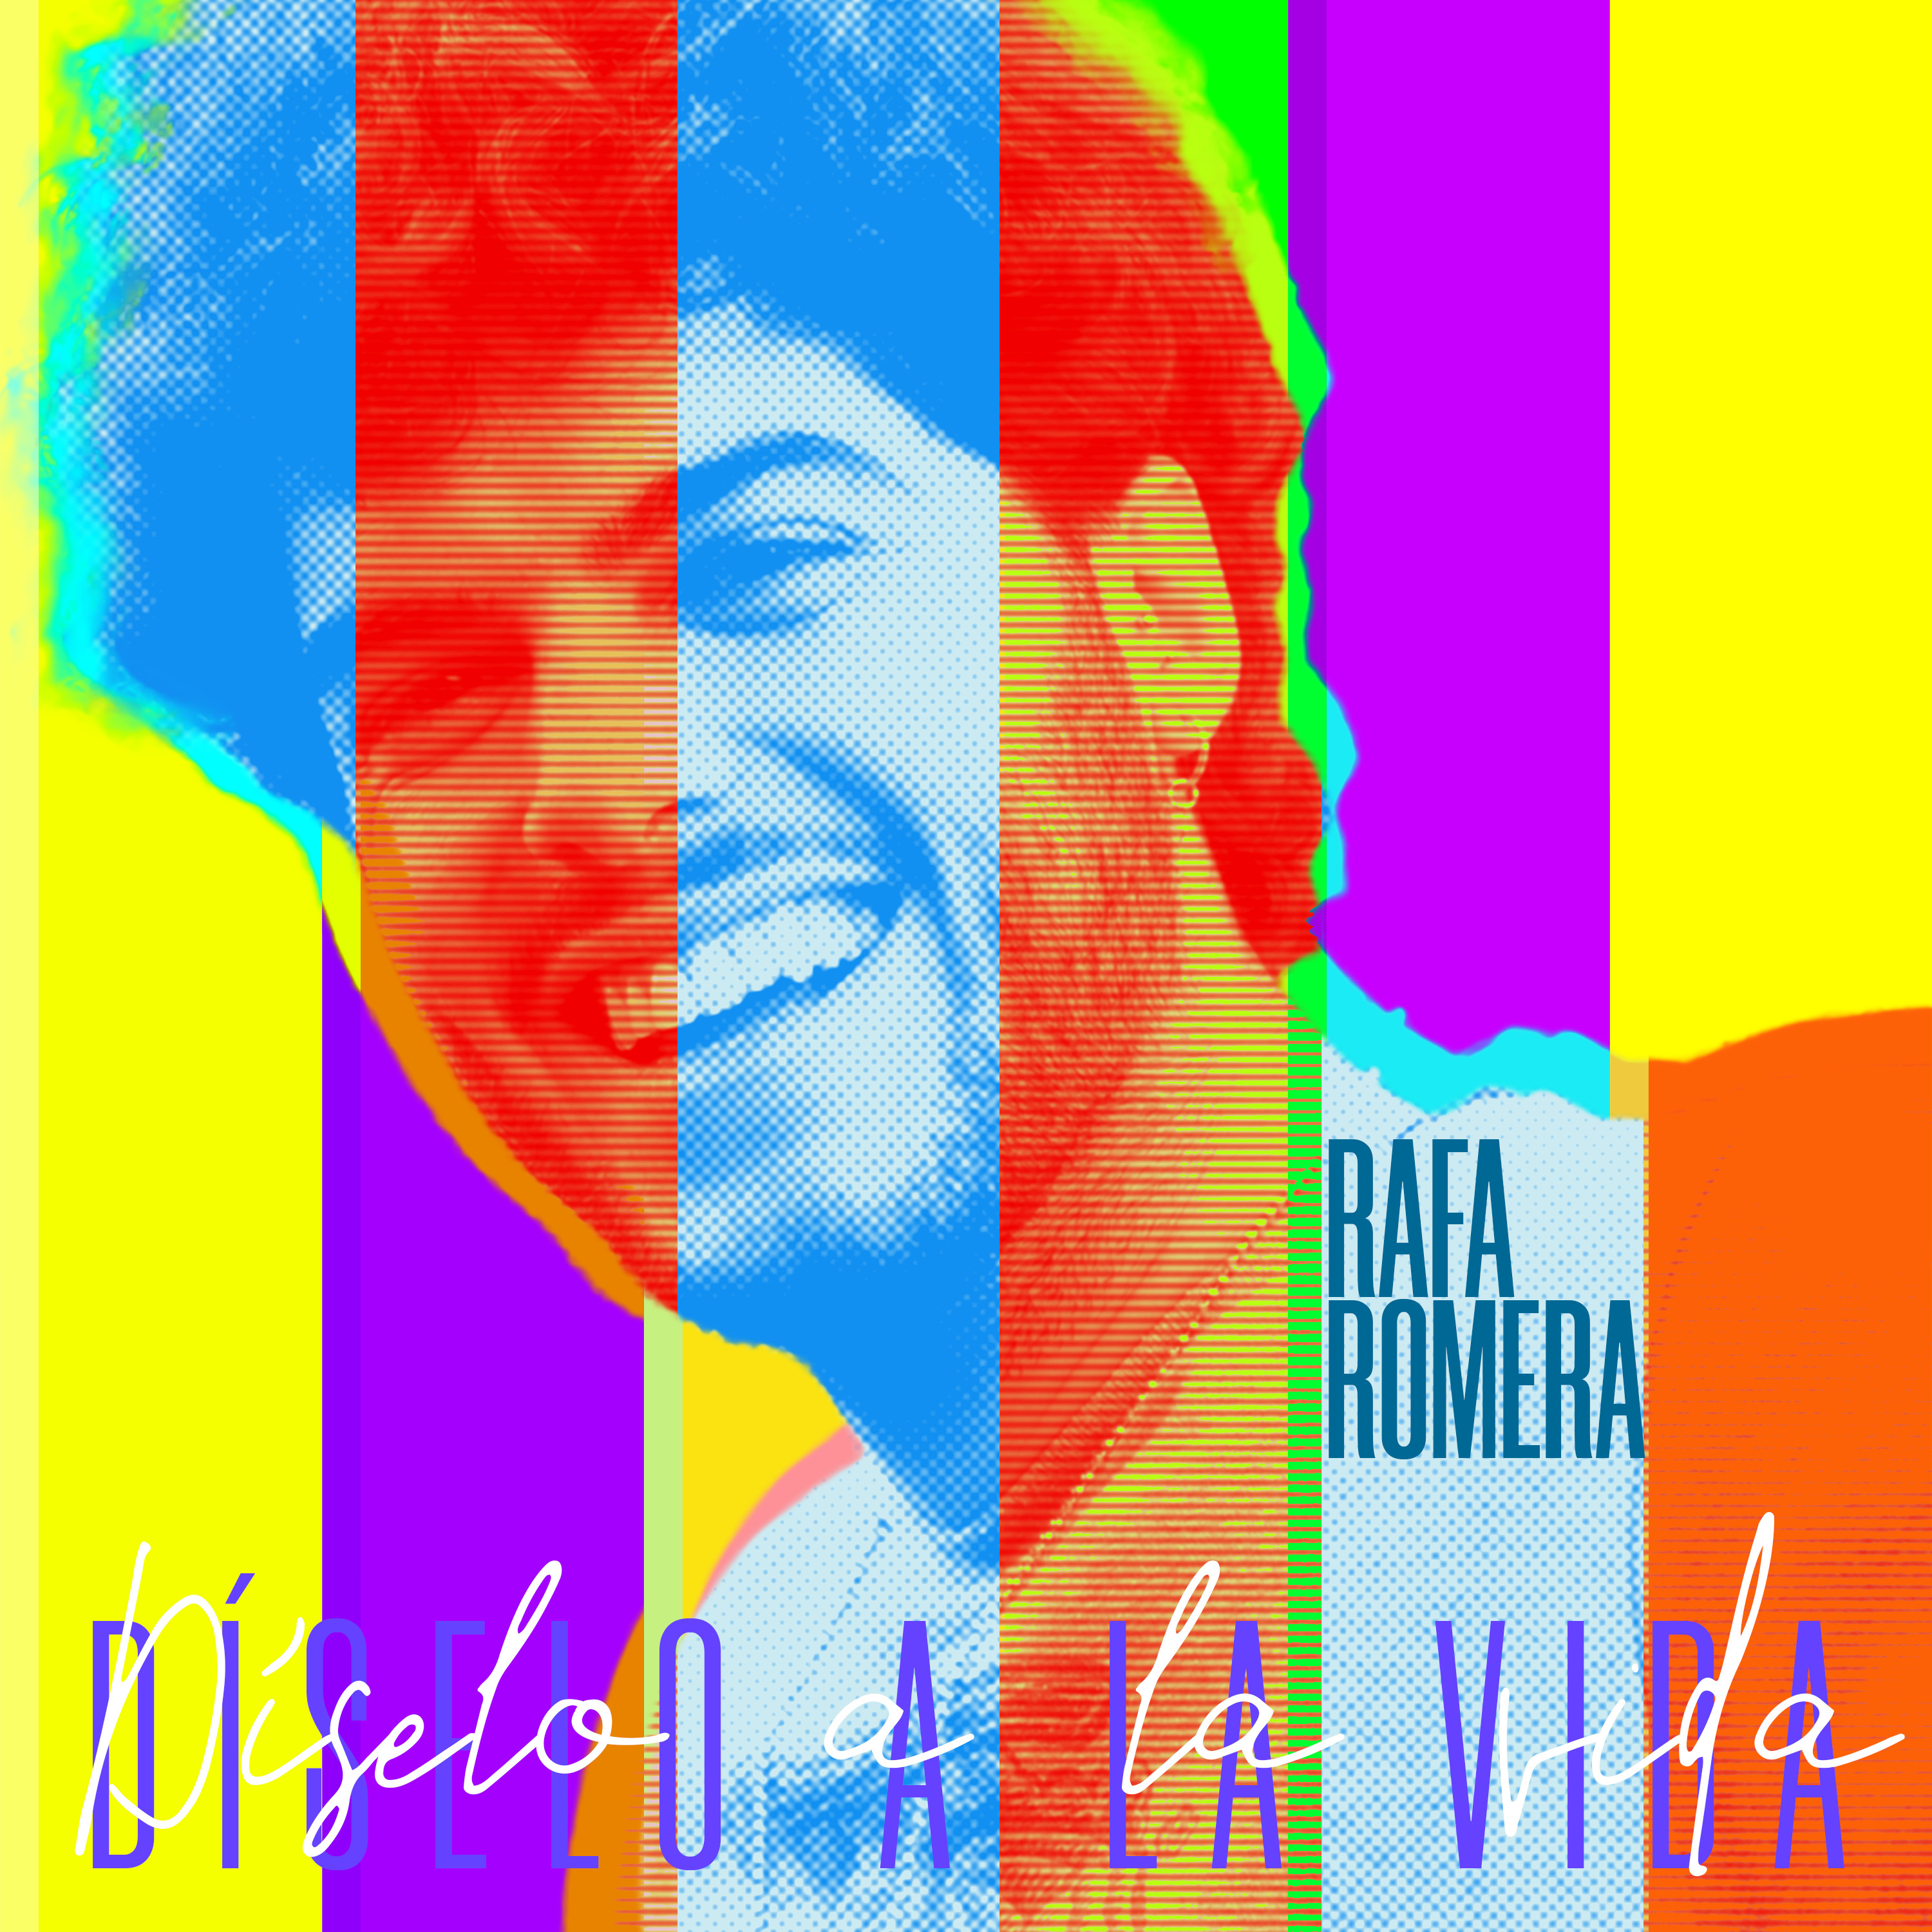 Diseño de la portada del single de Rafa Romera / TWITTER